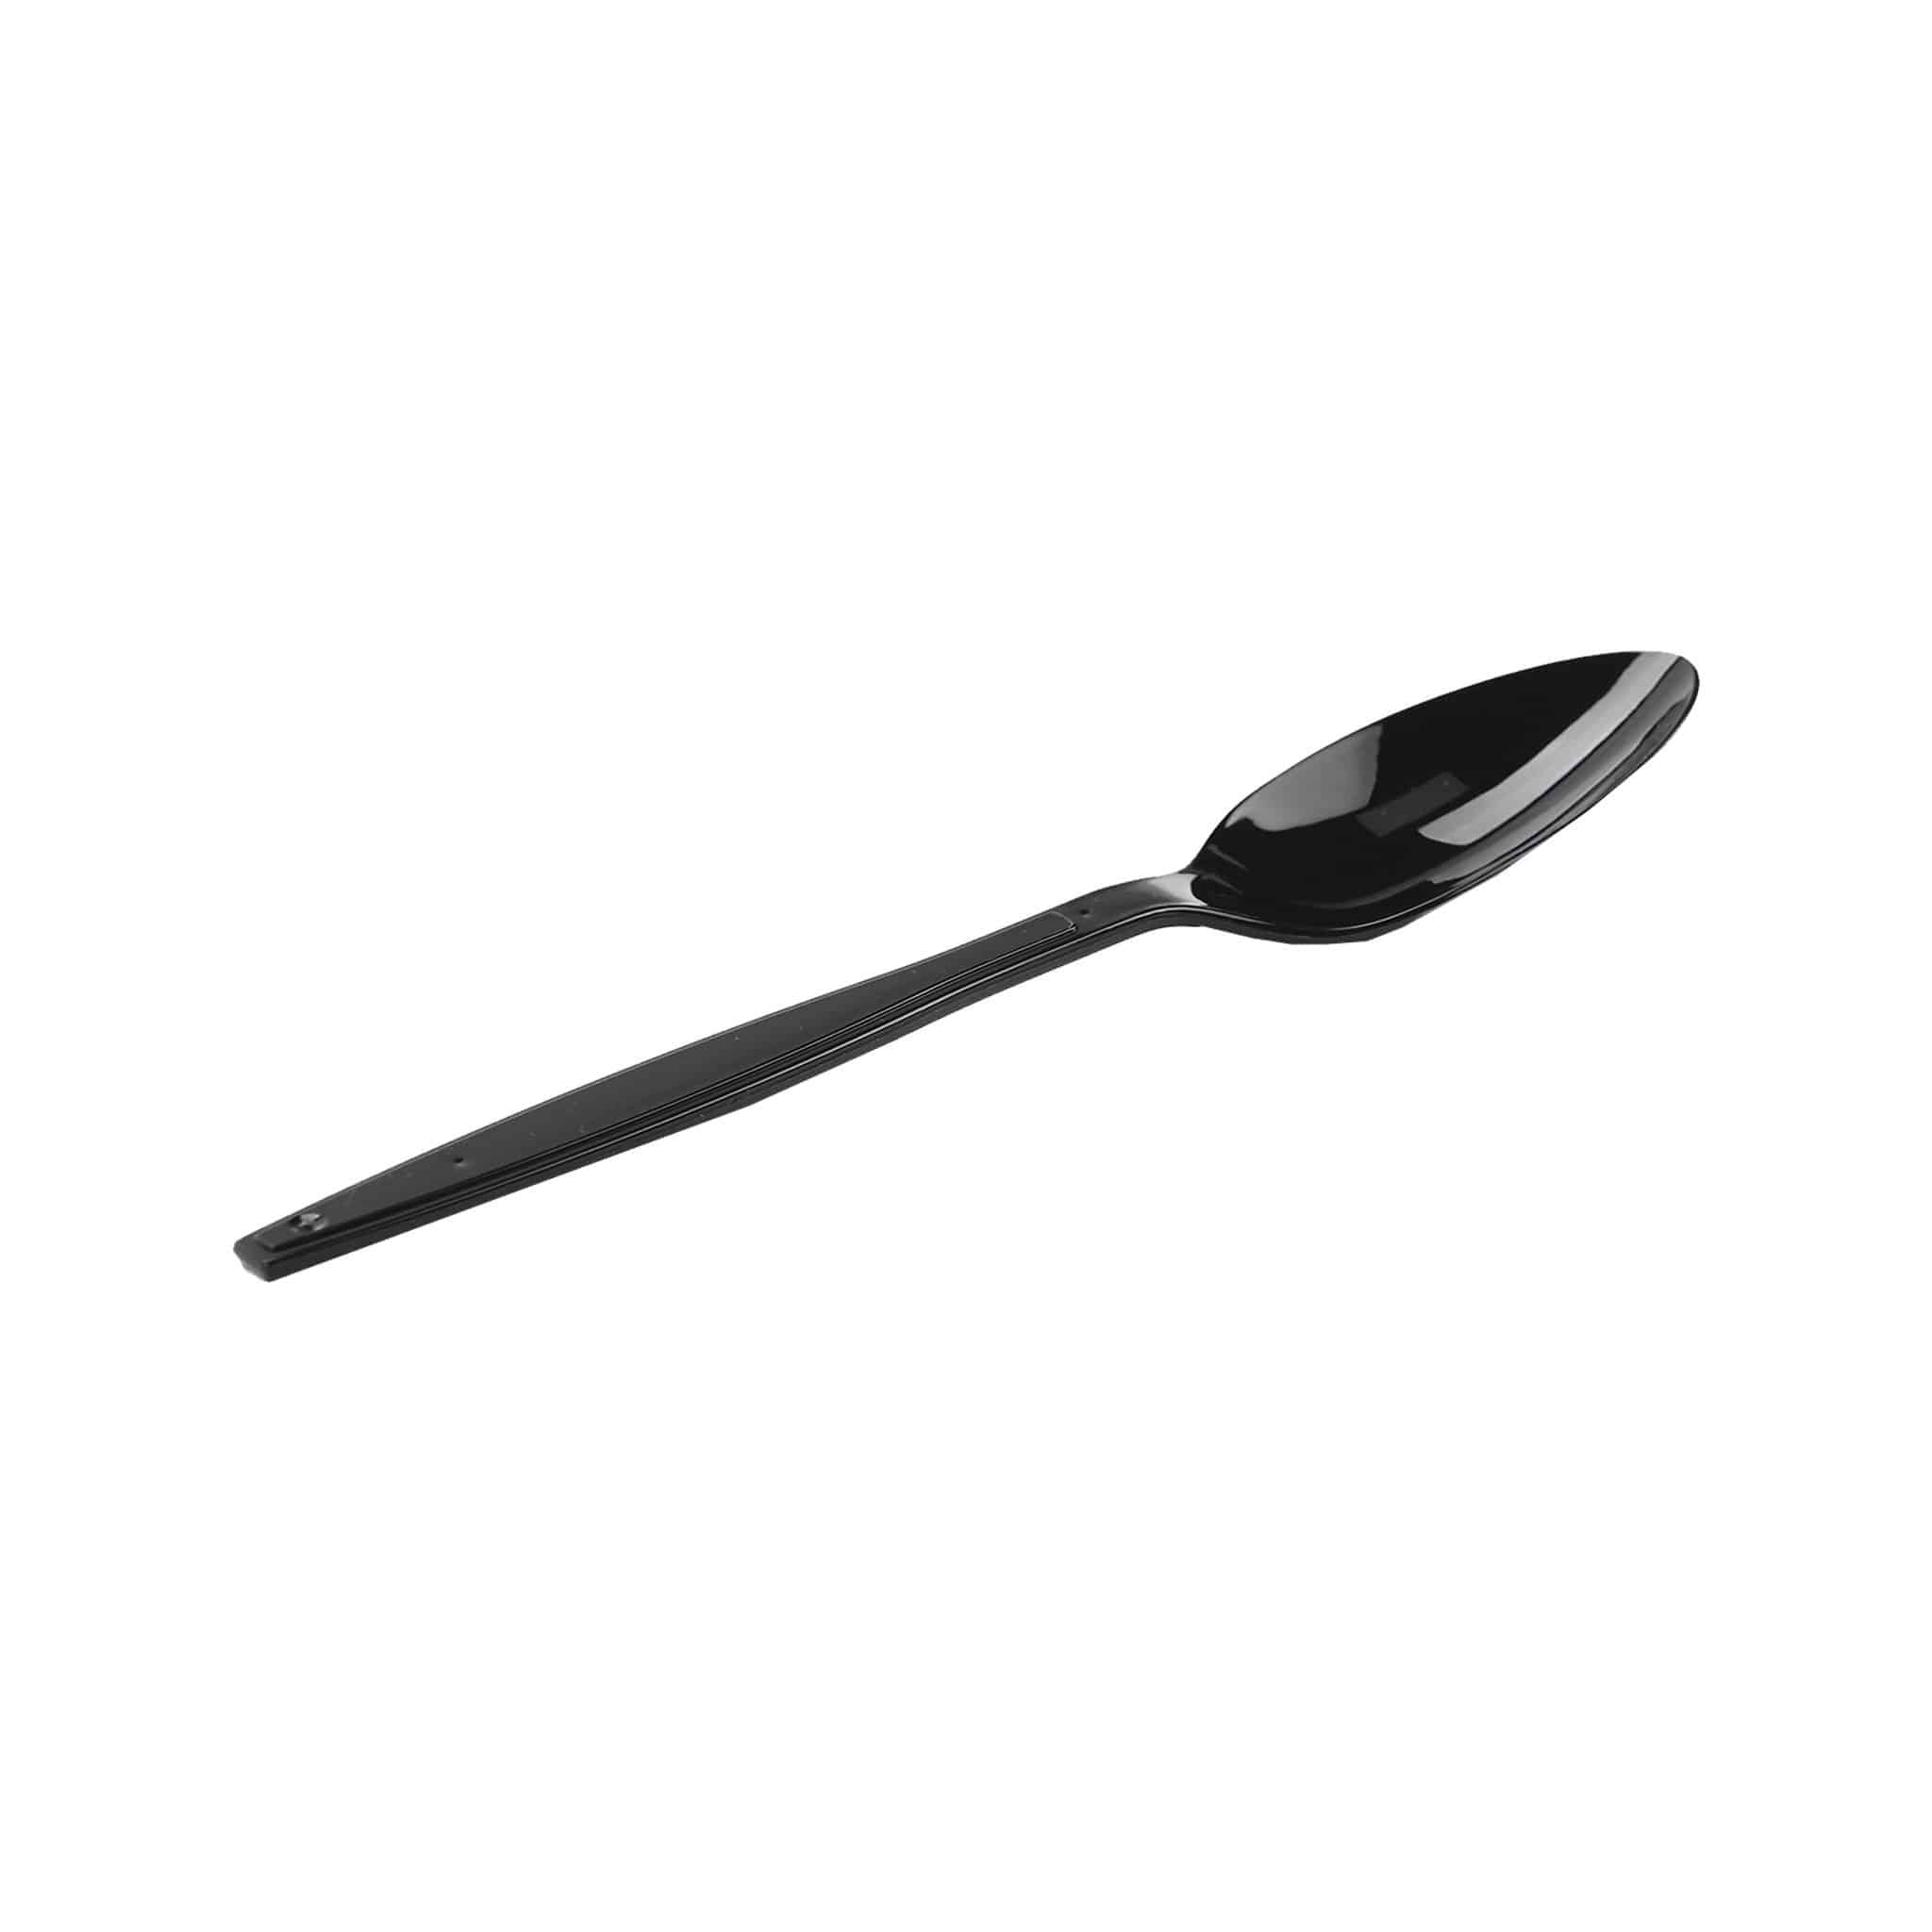  Plastic Heavy Duty Black Spoon 1000 pieces